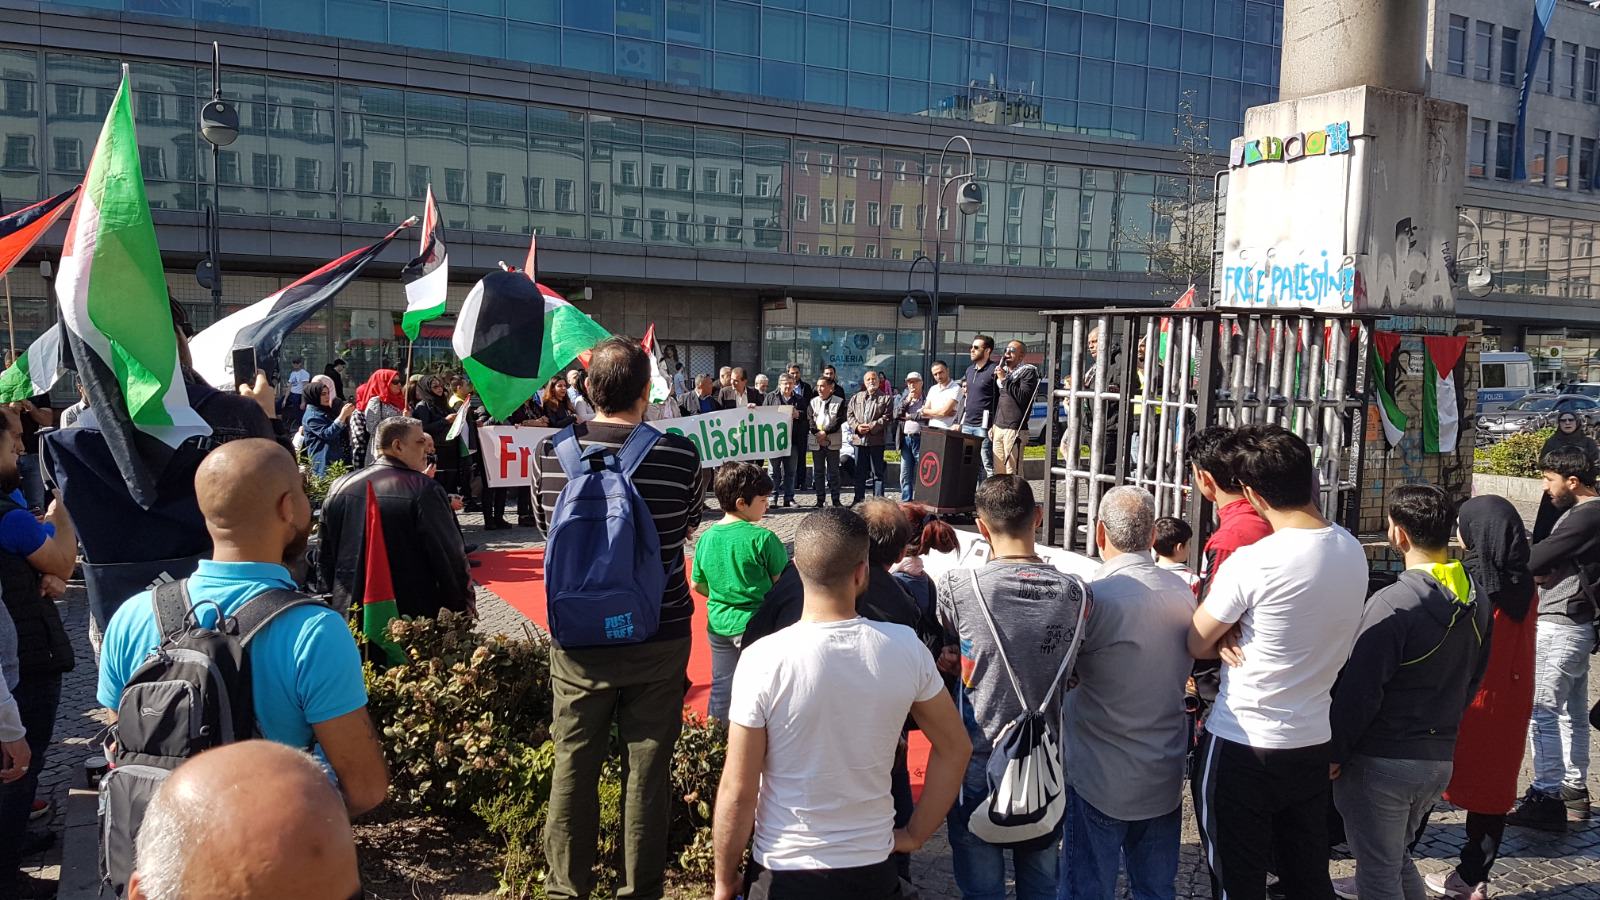 فعالية تضامنية في برلين مع الأسرى وإحياء ليوم الأسير الفلسطيني